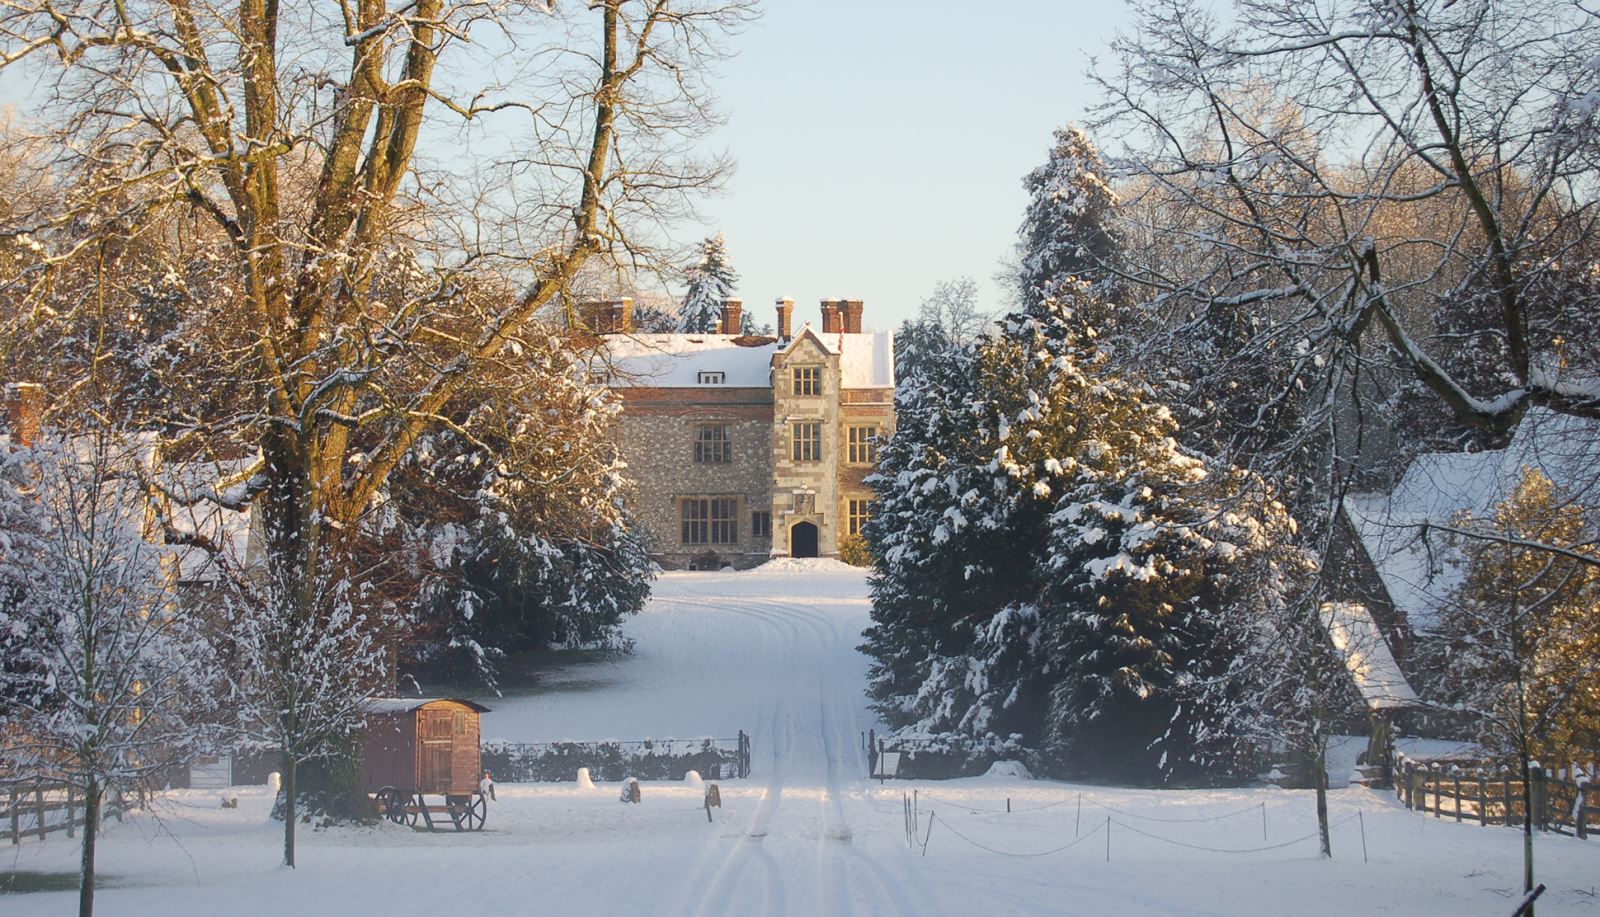 Jane Austen Trail Ending at Chawton House